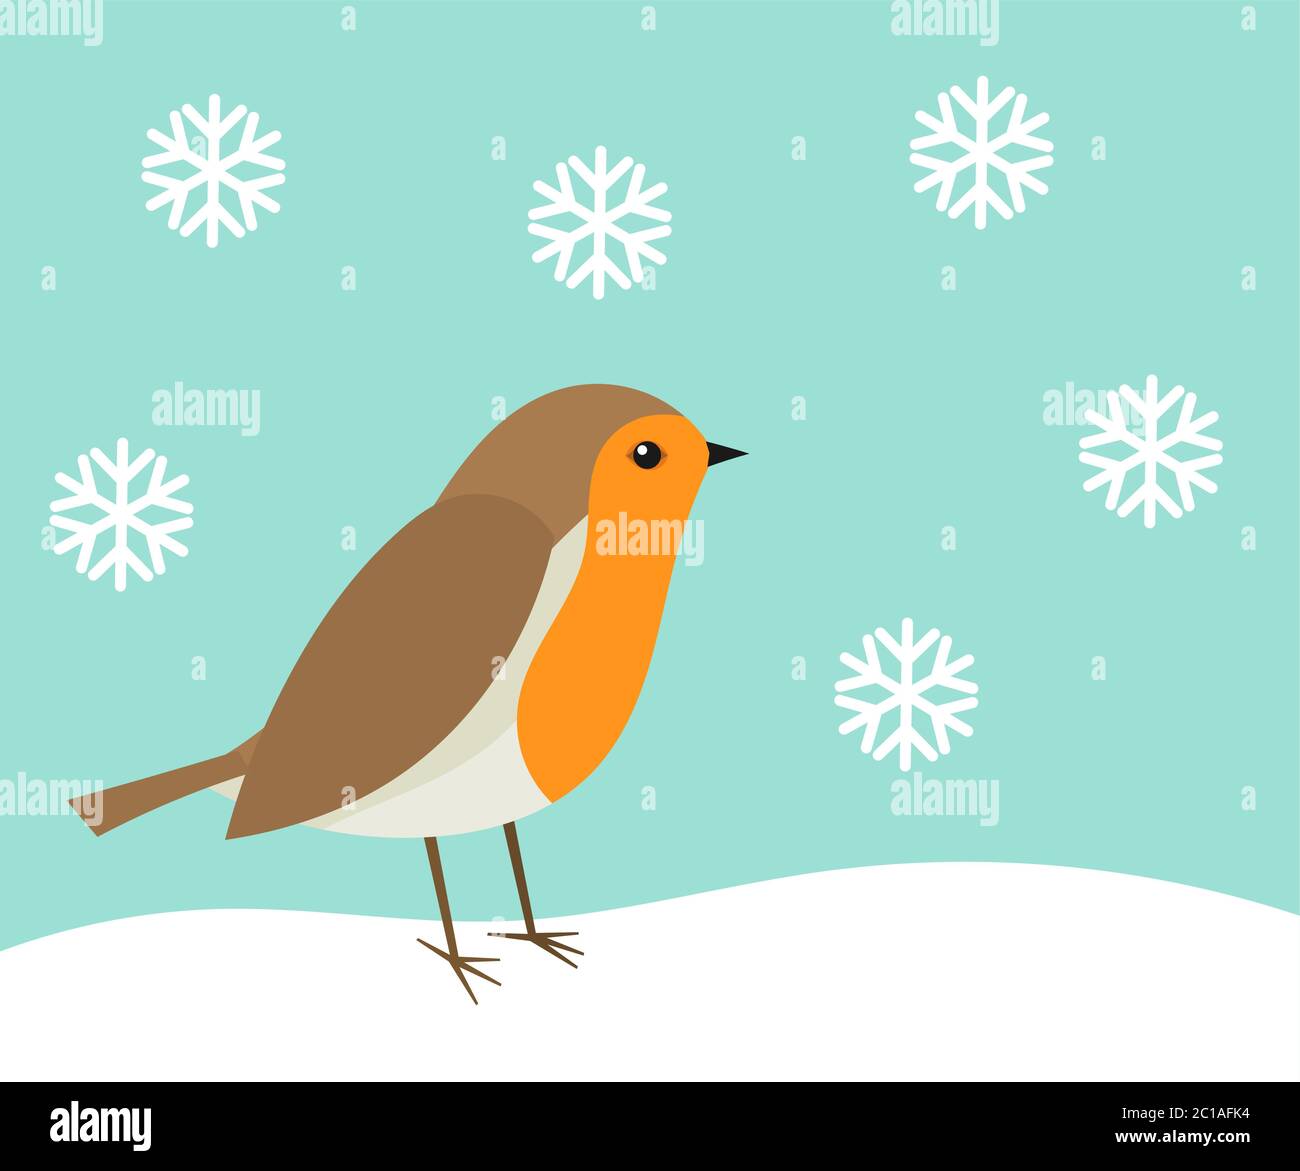 Joli oiseau de robin dans un paysage d'hiver. Illustration vectorielle. Illustration de Vecteur